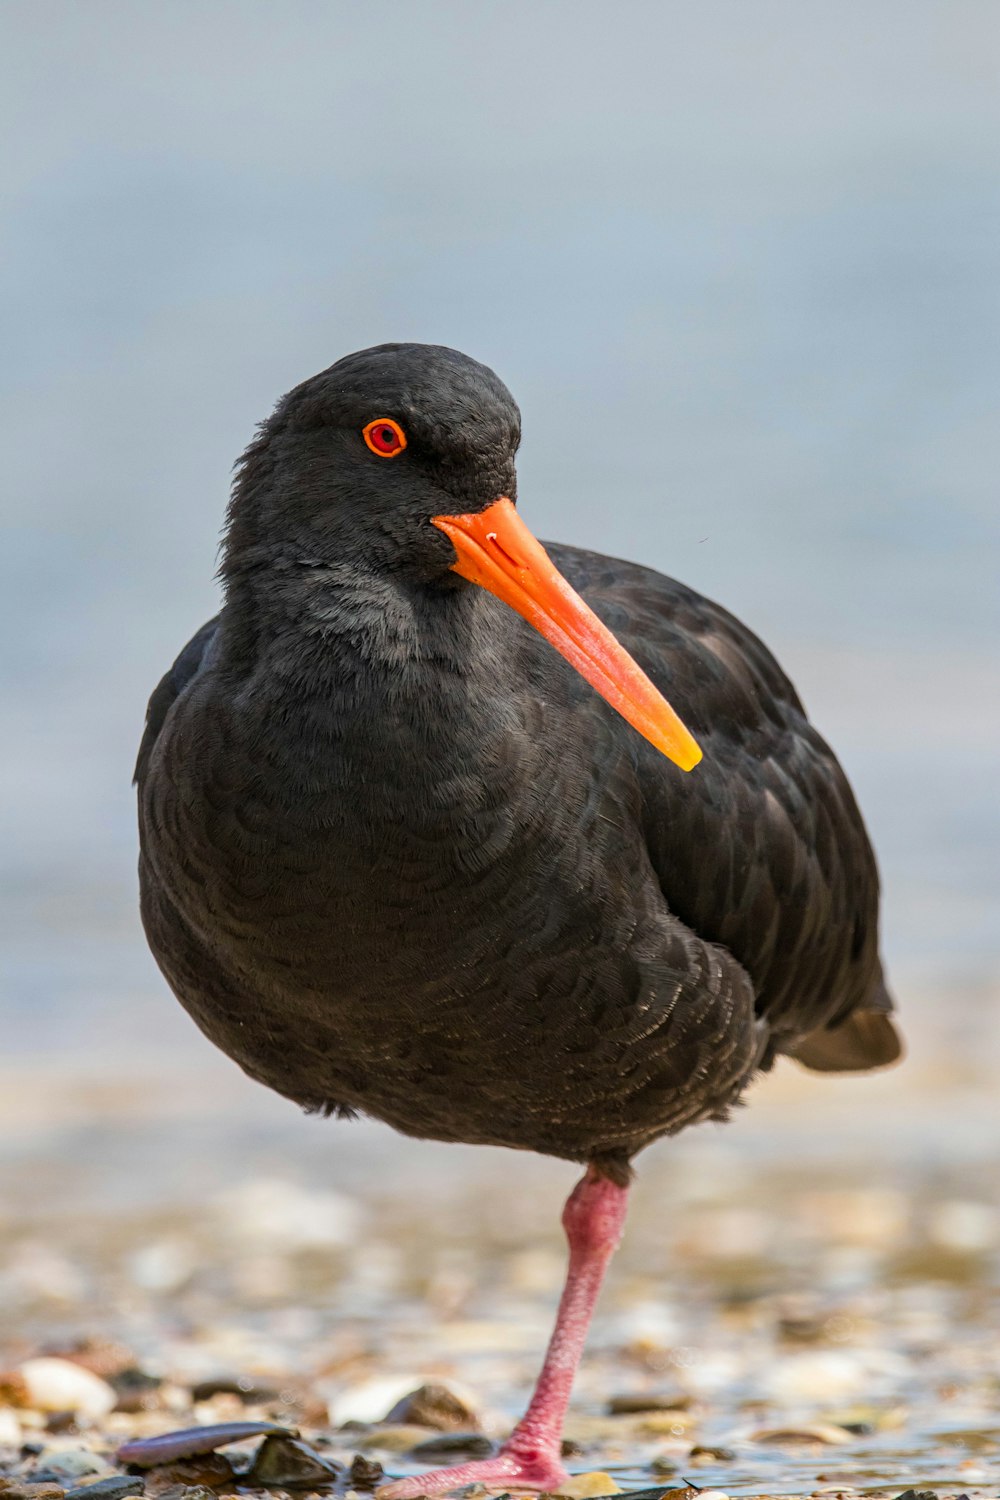 a black bird with an orange beak standing on a beach